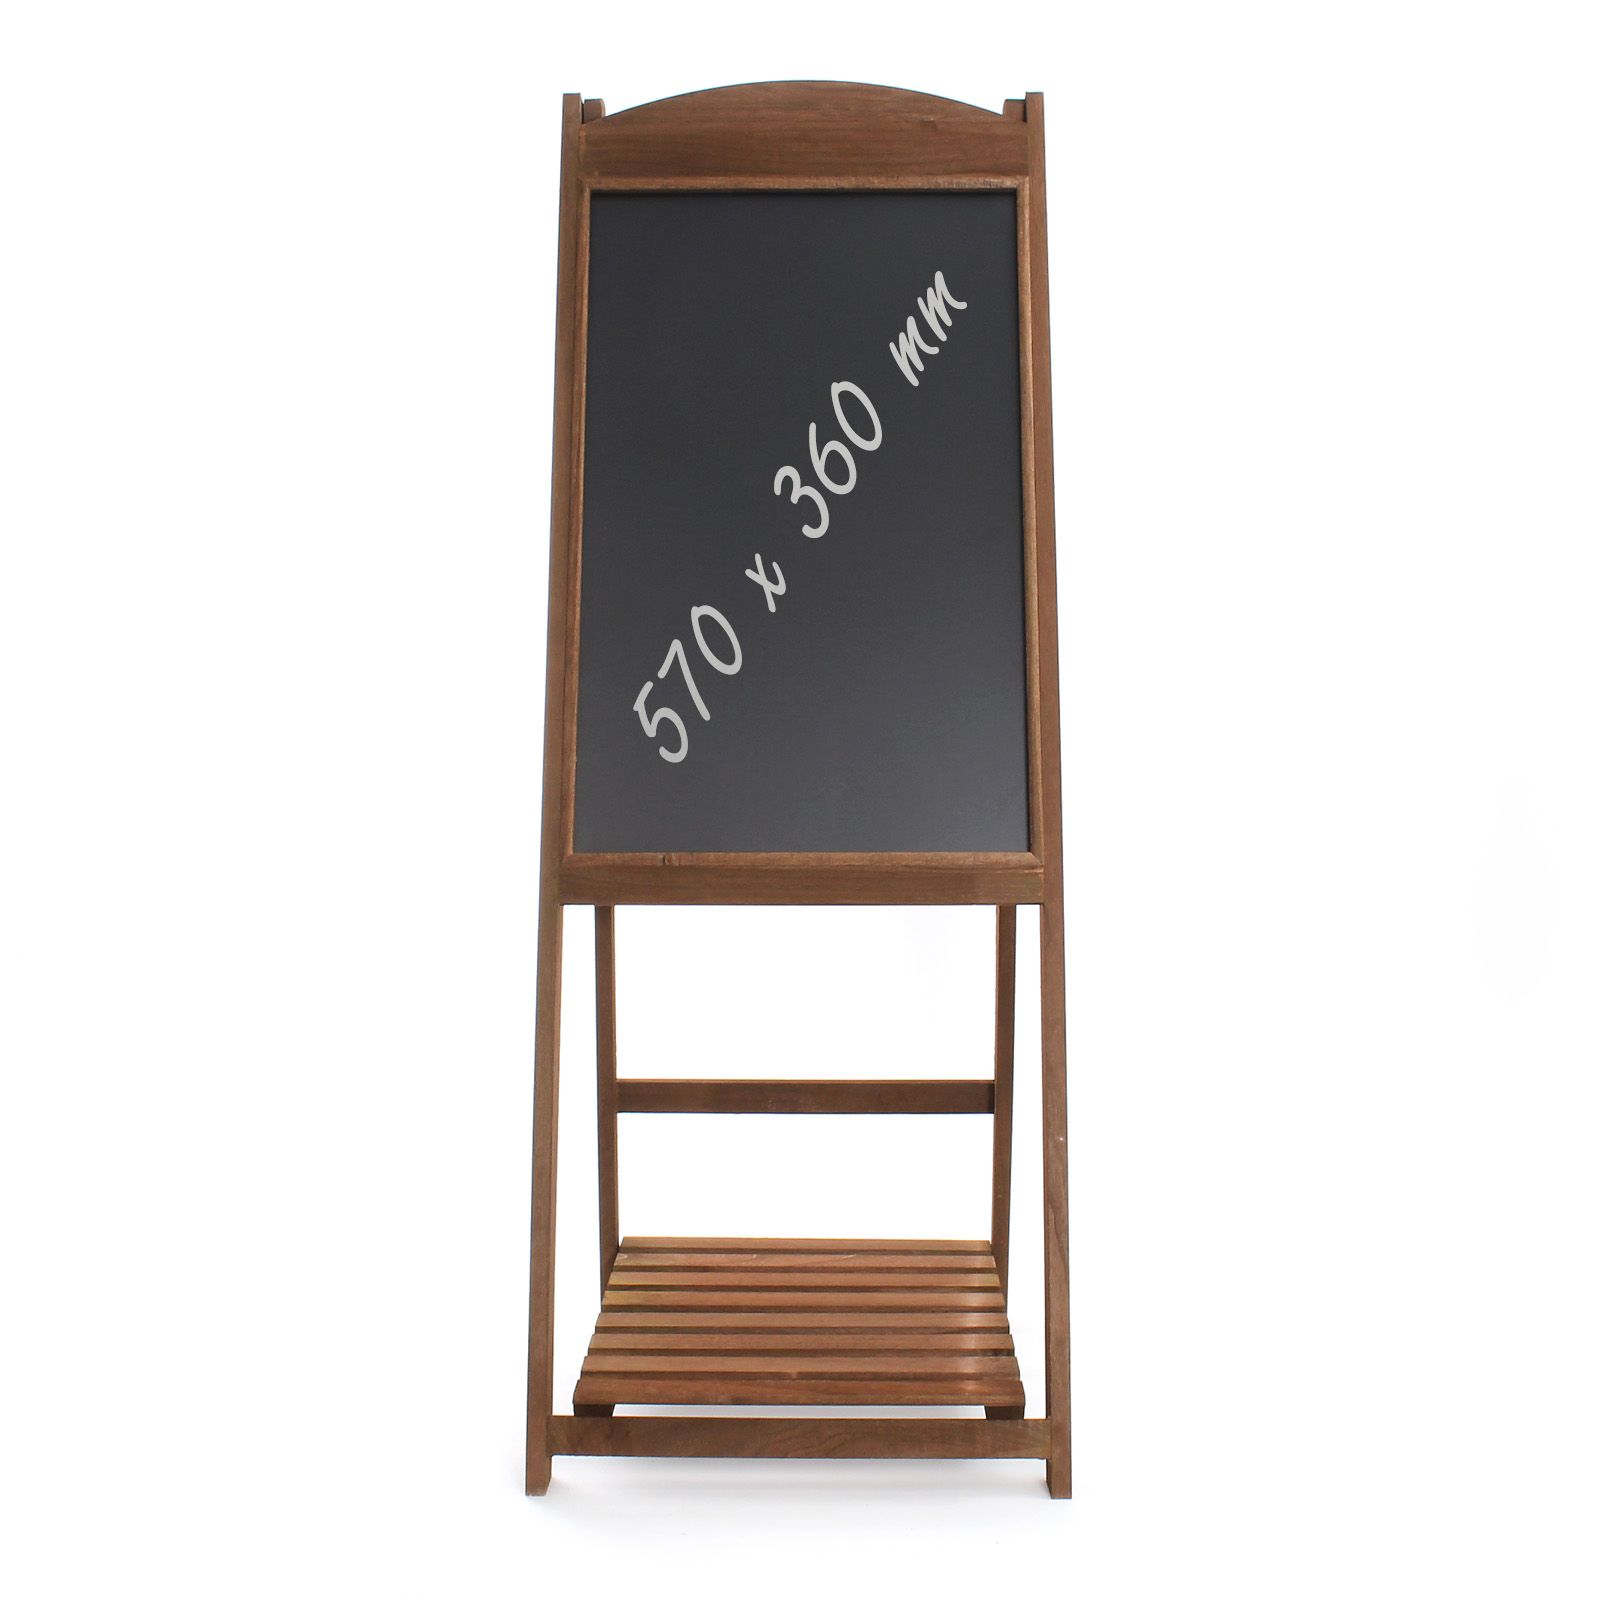 Reklamní dřevěný stojan 42x112cm, křídová tabule s policí